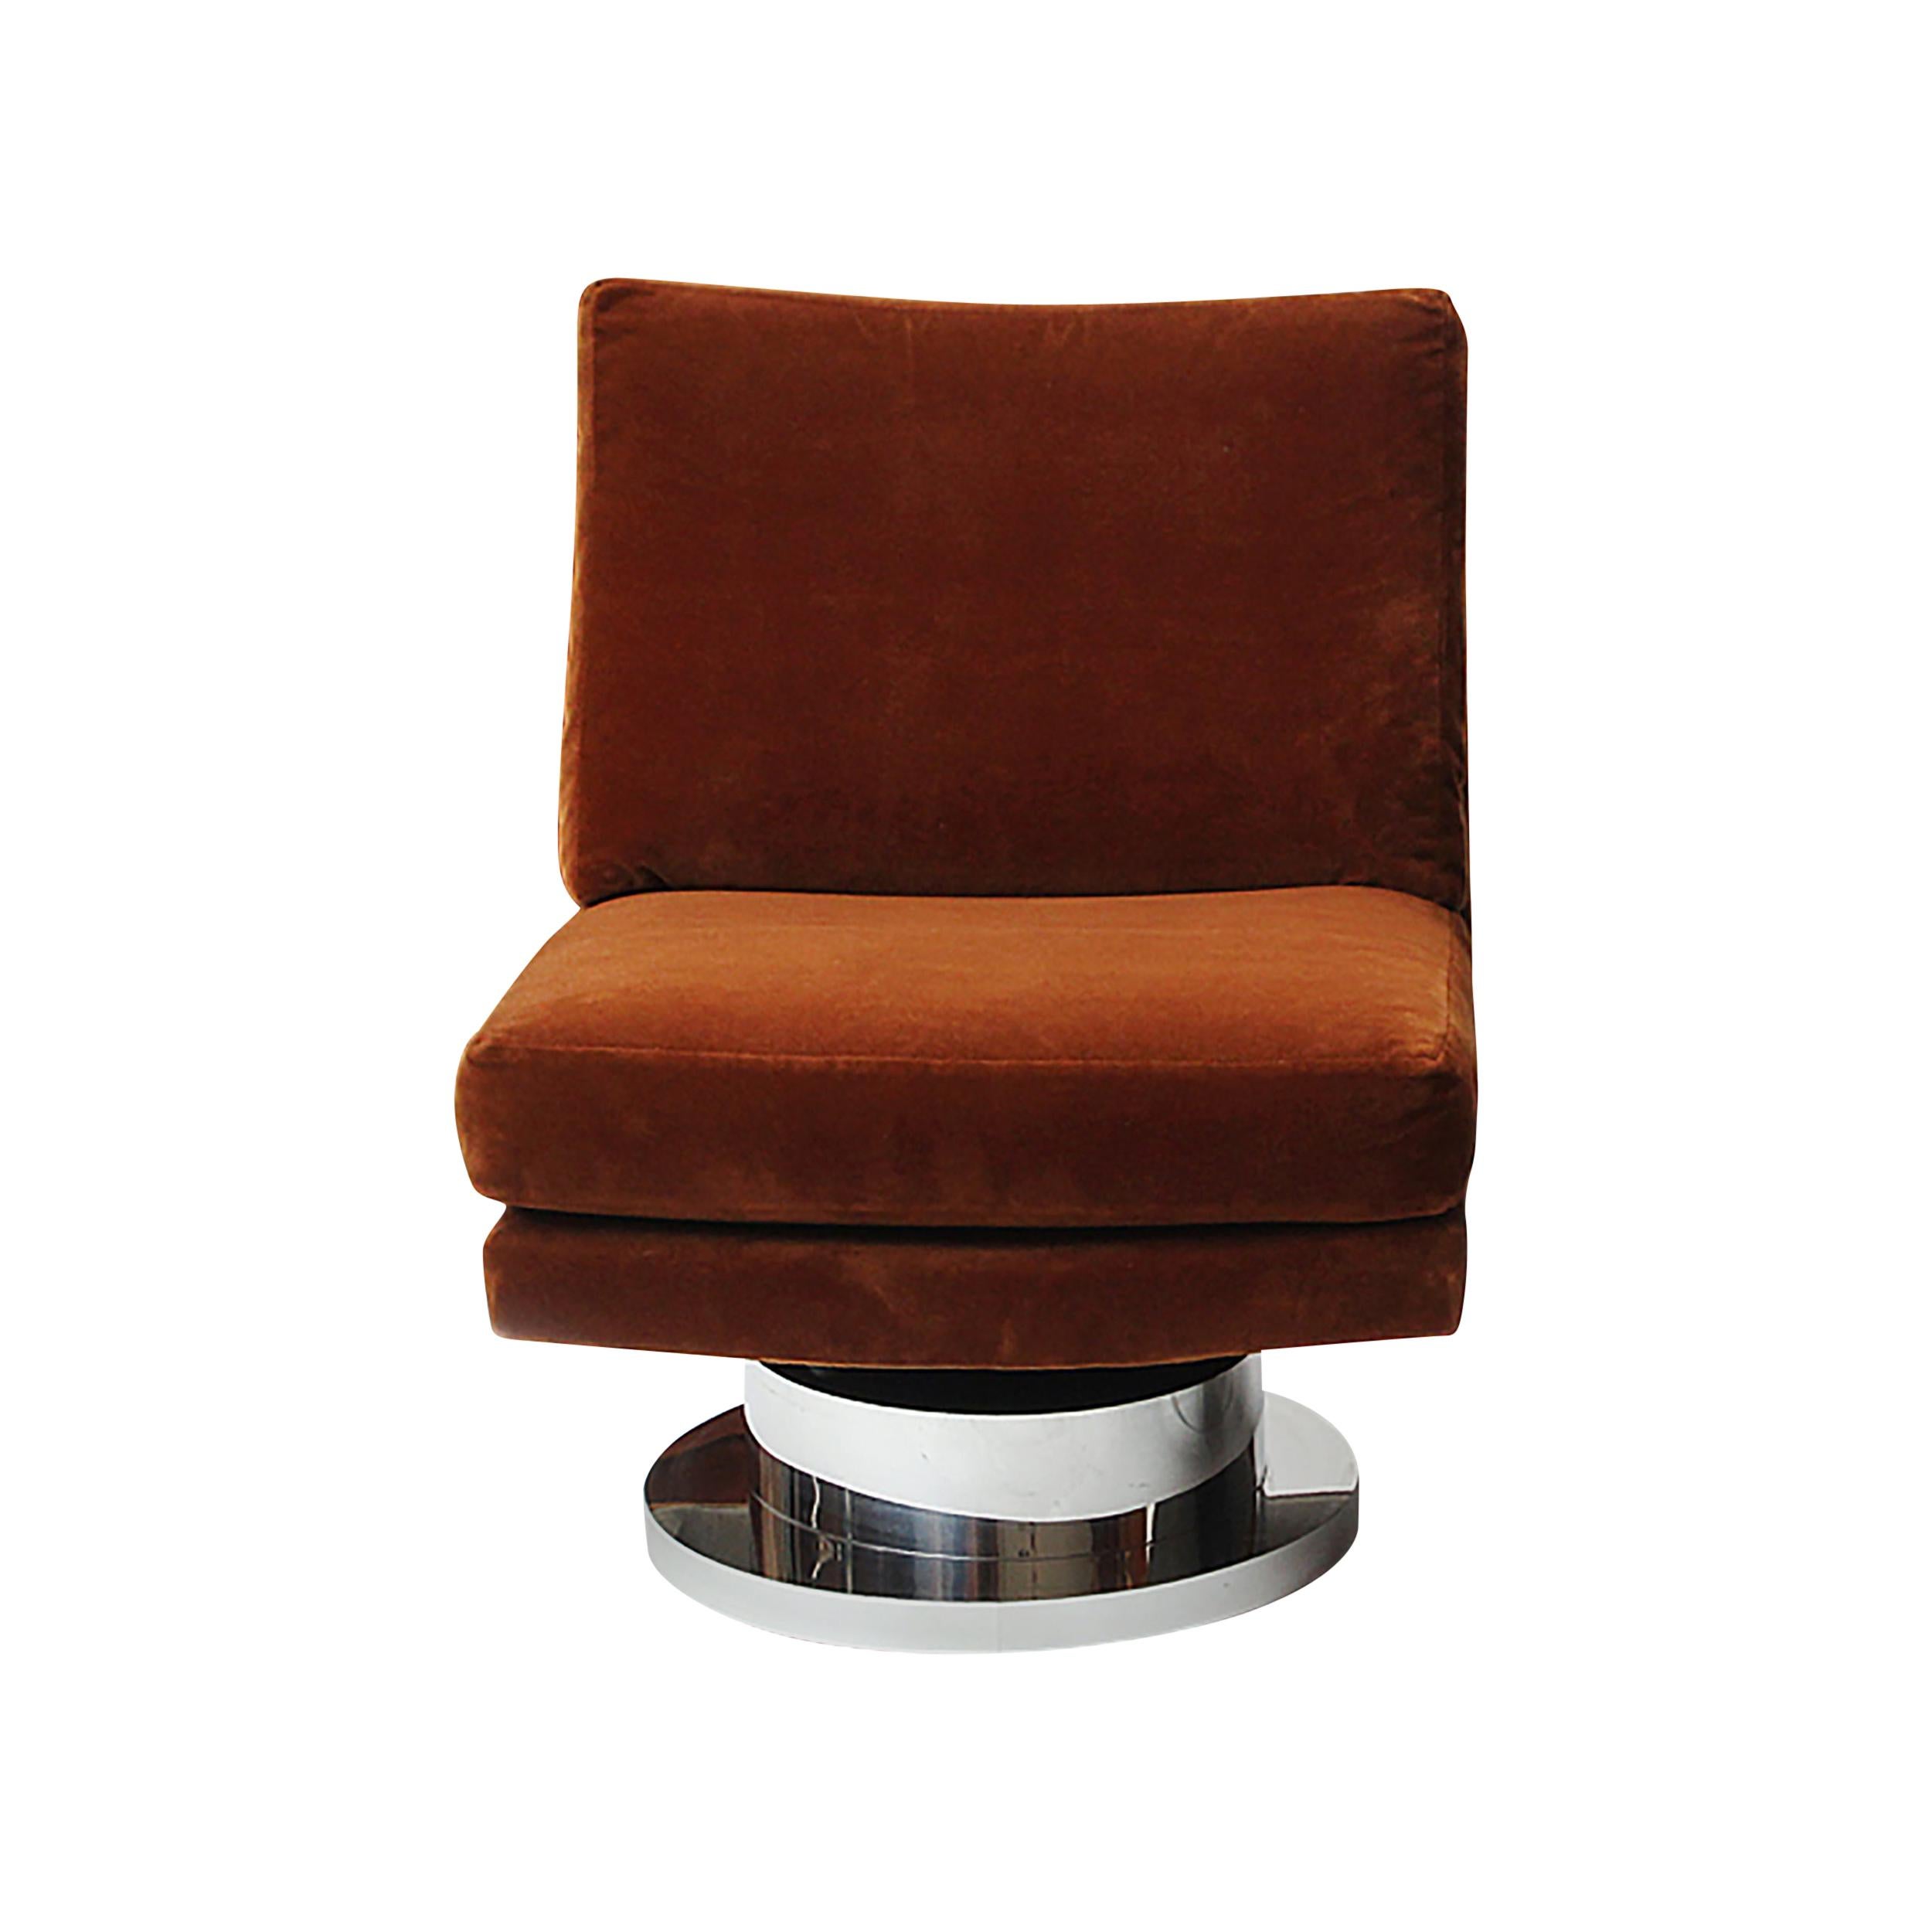 A slipper chair on a chromed swivel base, retaining the original russet, cut velvet upholstery.
Designed by Milo Baughman for Thayer-Coggin.